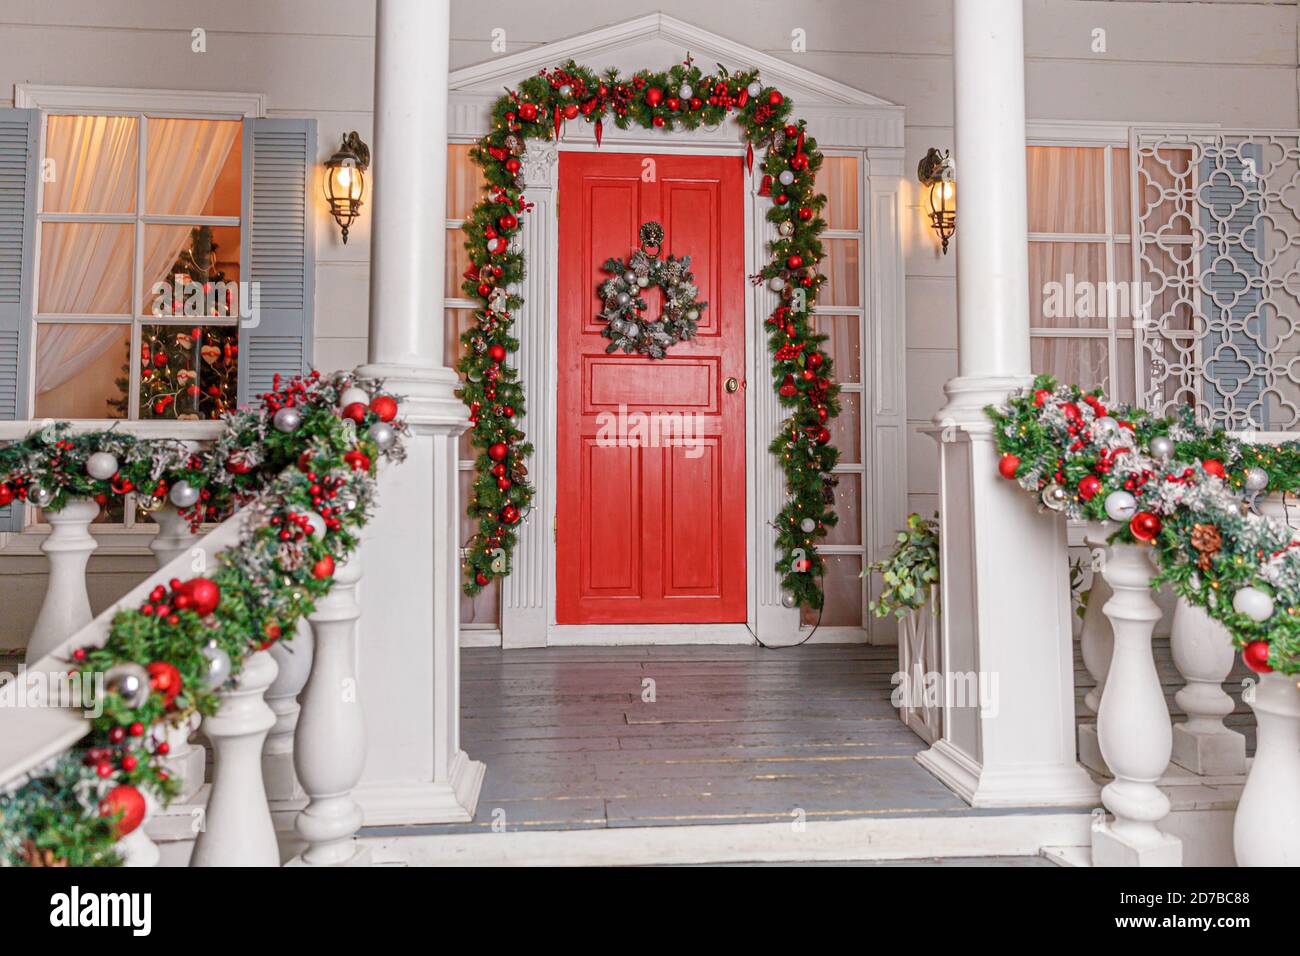 Idea di decorazione del portico di natale. ingresso di casa con porta rossa  decorata per le vacanze.